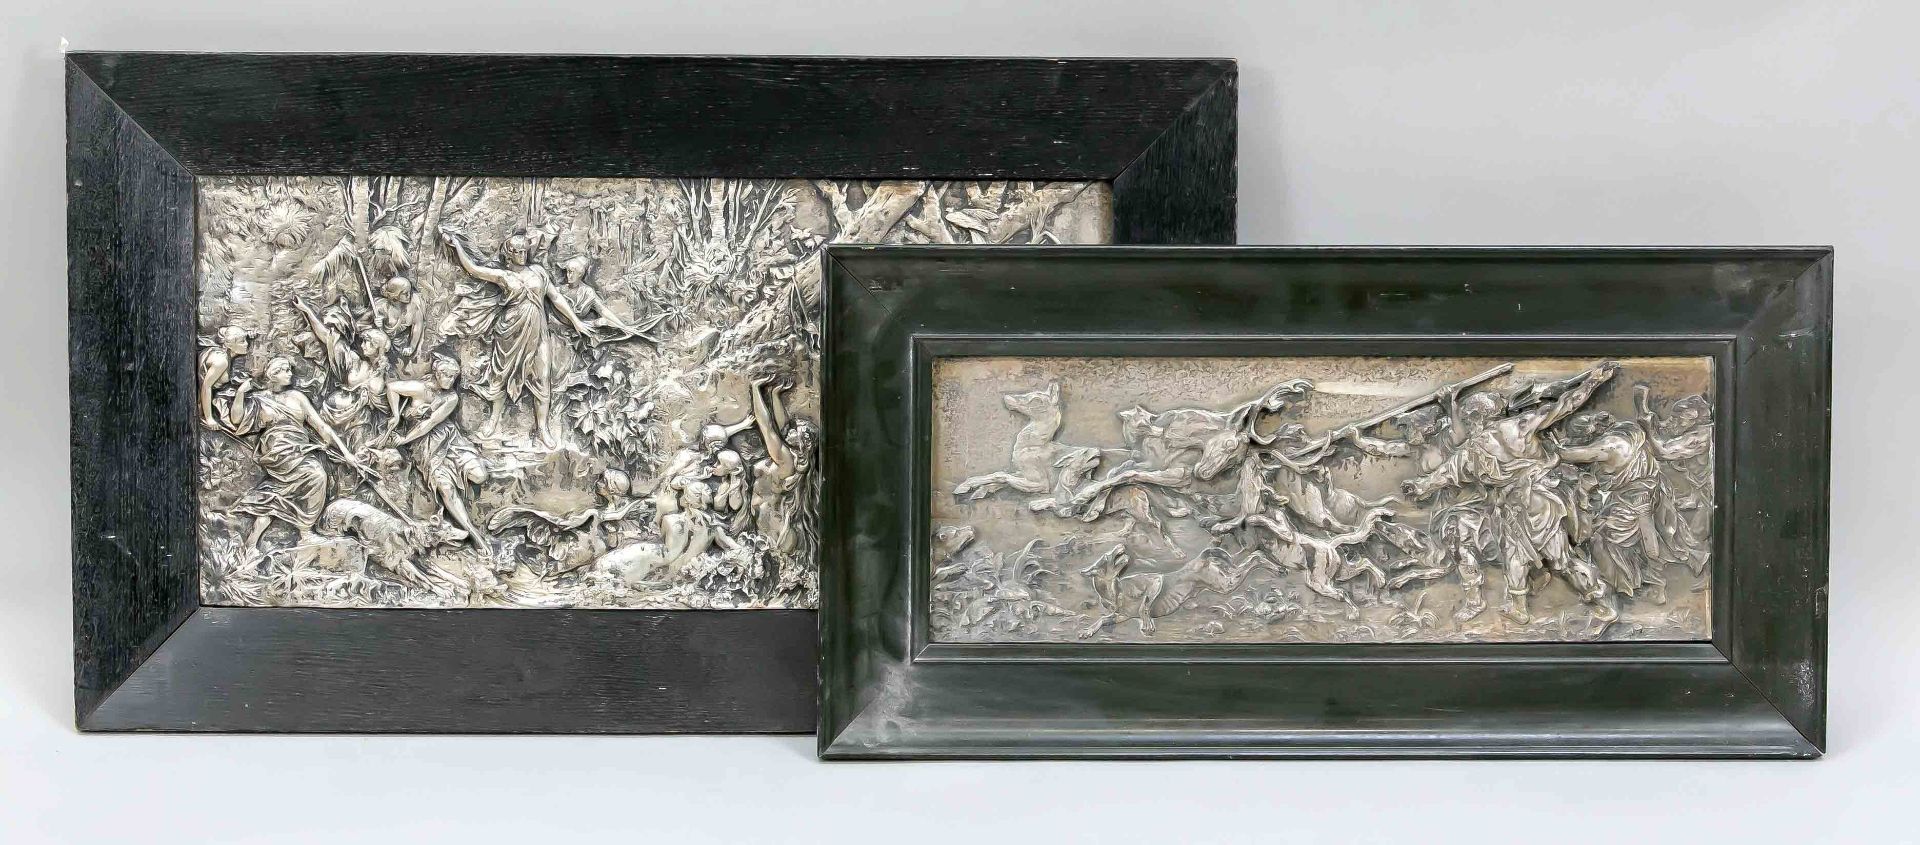 Zwei jagdliche Reliefs um 1900, vielfigurioge, mythologische Jagdszenen, Weißmetall, verschmutzt,